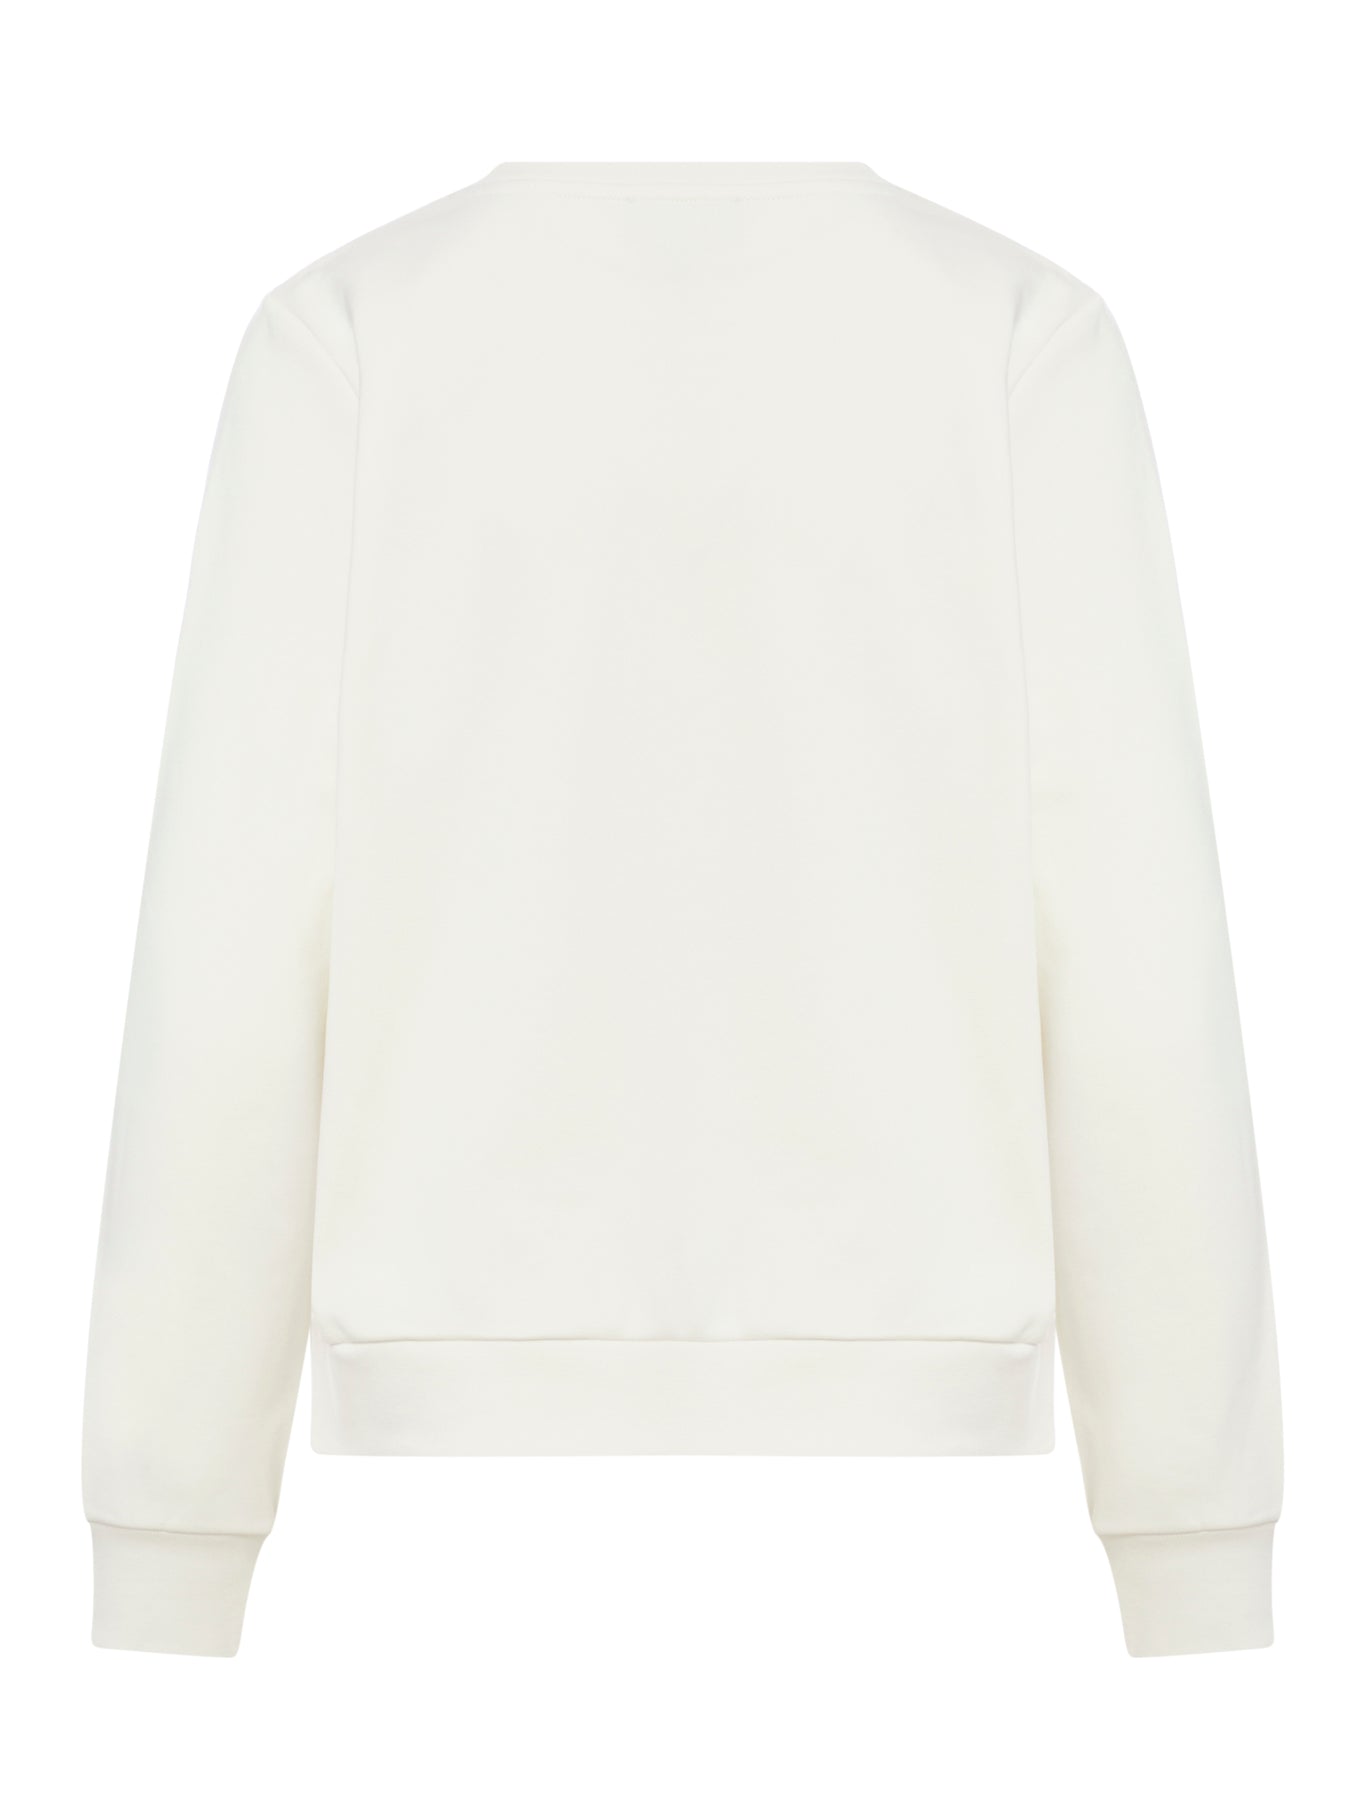 Skye cotton sweatshirt with logo